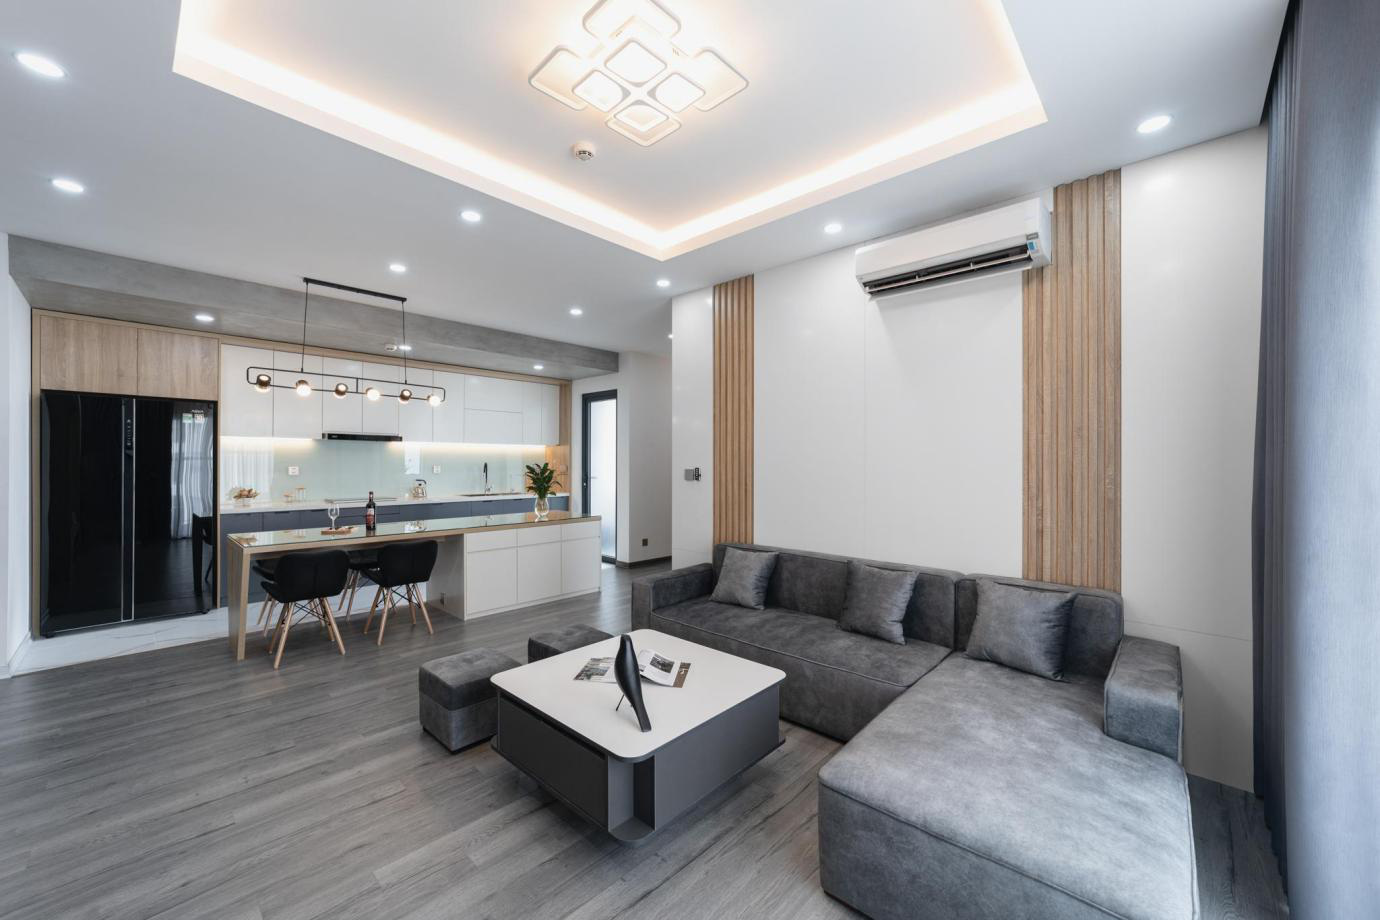 Giải pháp thiết kế nội thất chung cư liên thông phòng khách và bếp ấn tượng, hiệu quả - Ảnh 3.